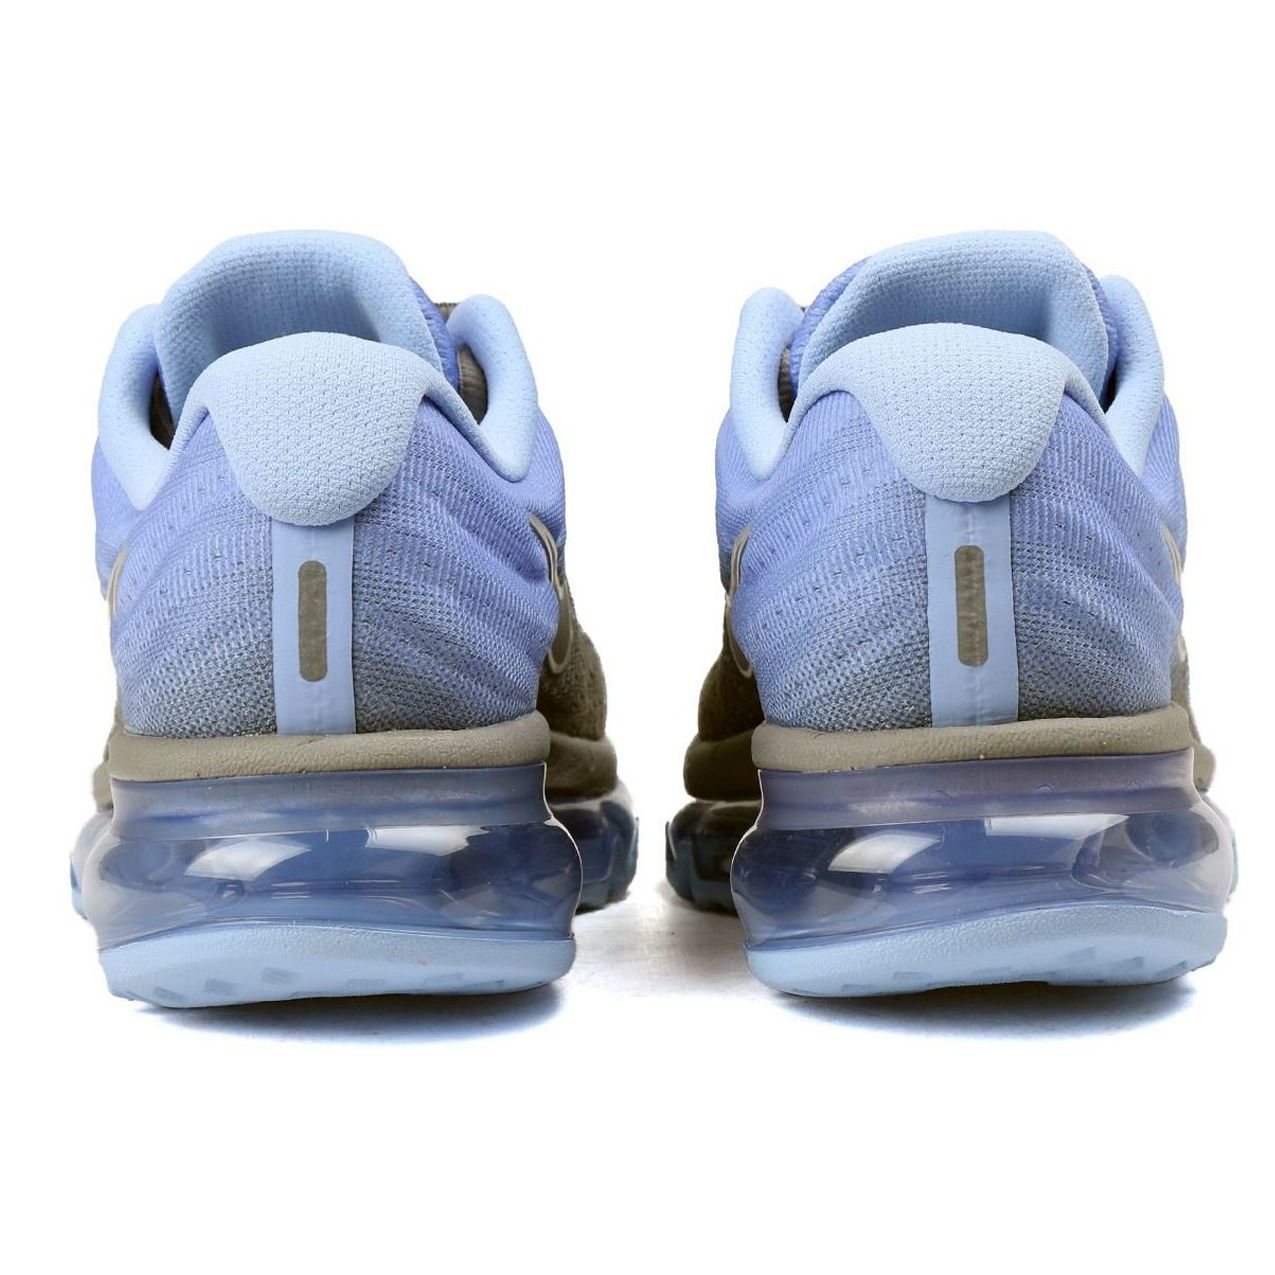  کفش مخصوص دویدن مردانه نایکی مدل Air max کد 8765-675